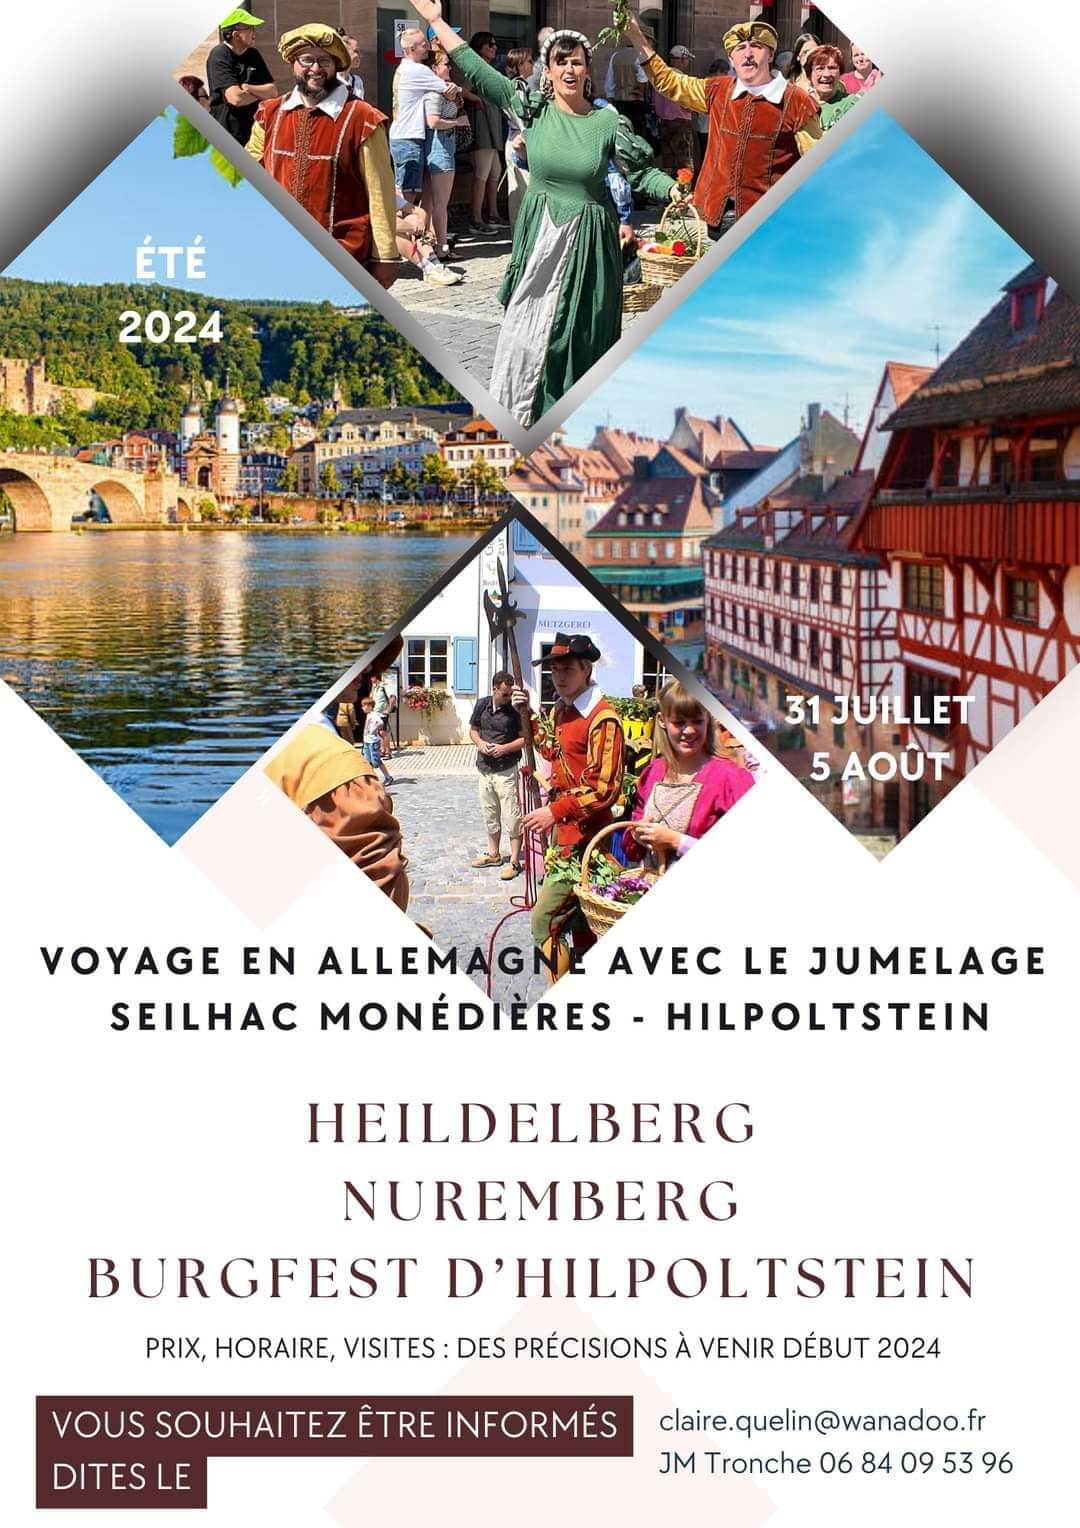 You are currently viewing Voyage du Comité de Jumelage Seilhac Monédières – Hilpolstein